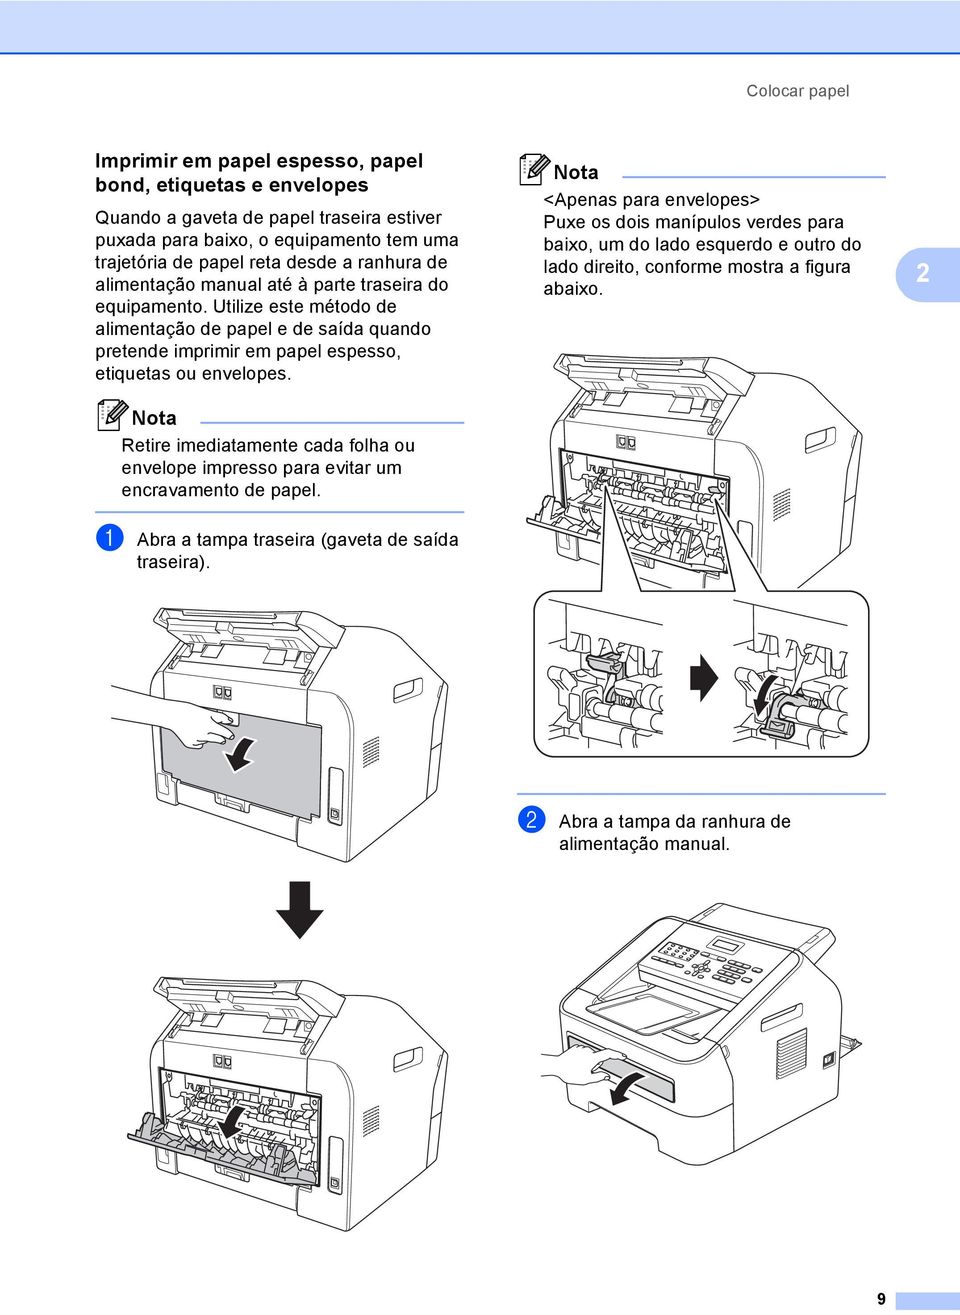 Utilize este método de alimentação de papel e de saída quando pretende imprimir em papel espesso, etiquetas ou envelopes.